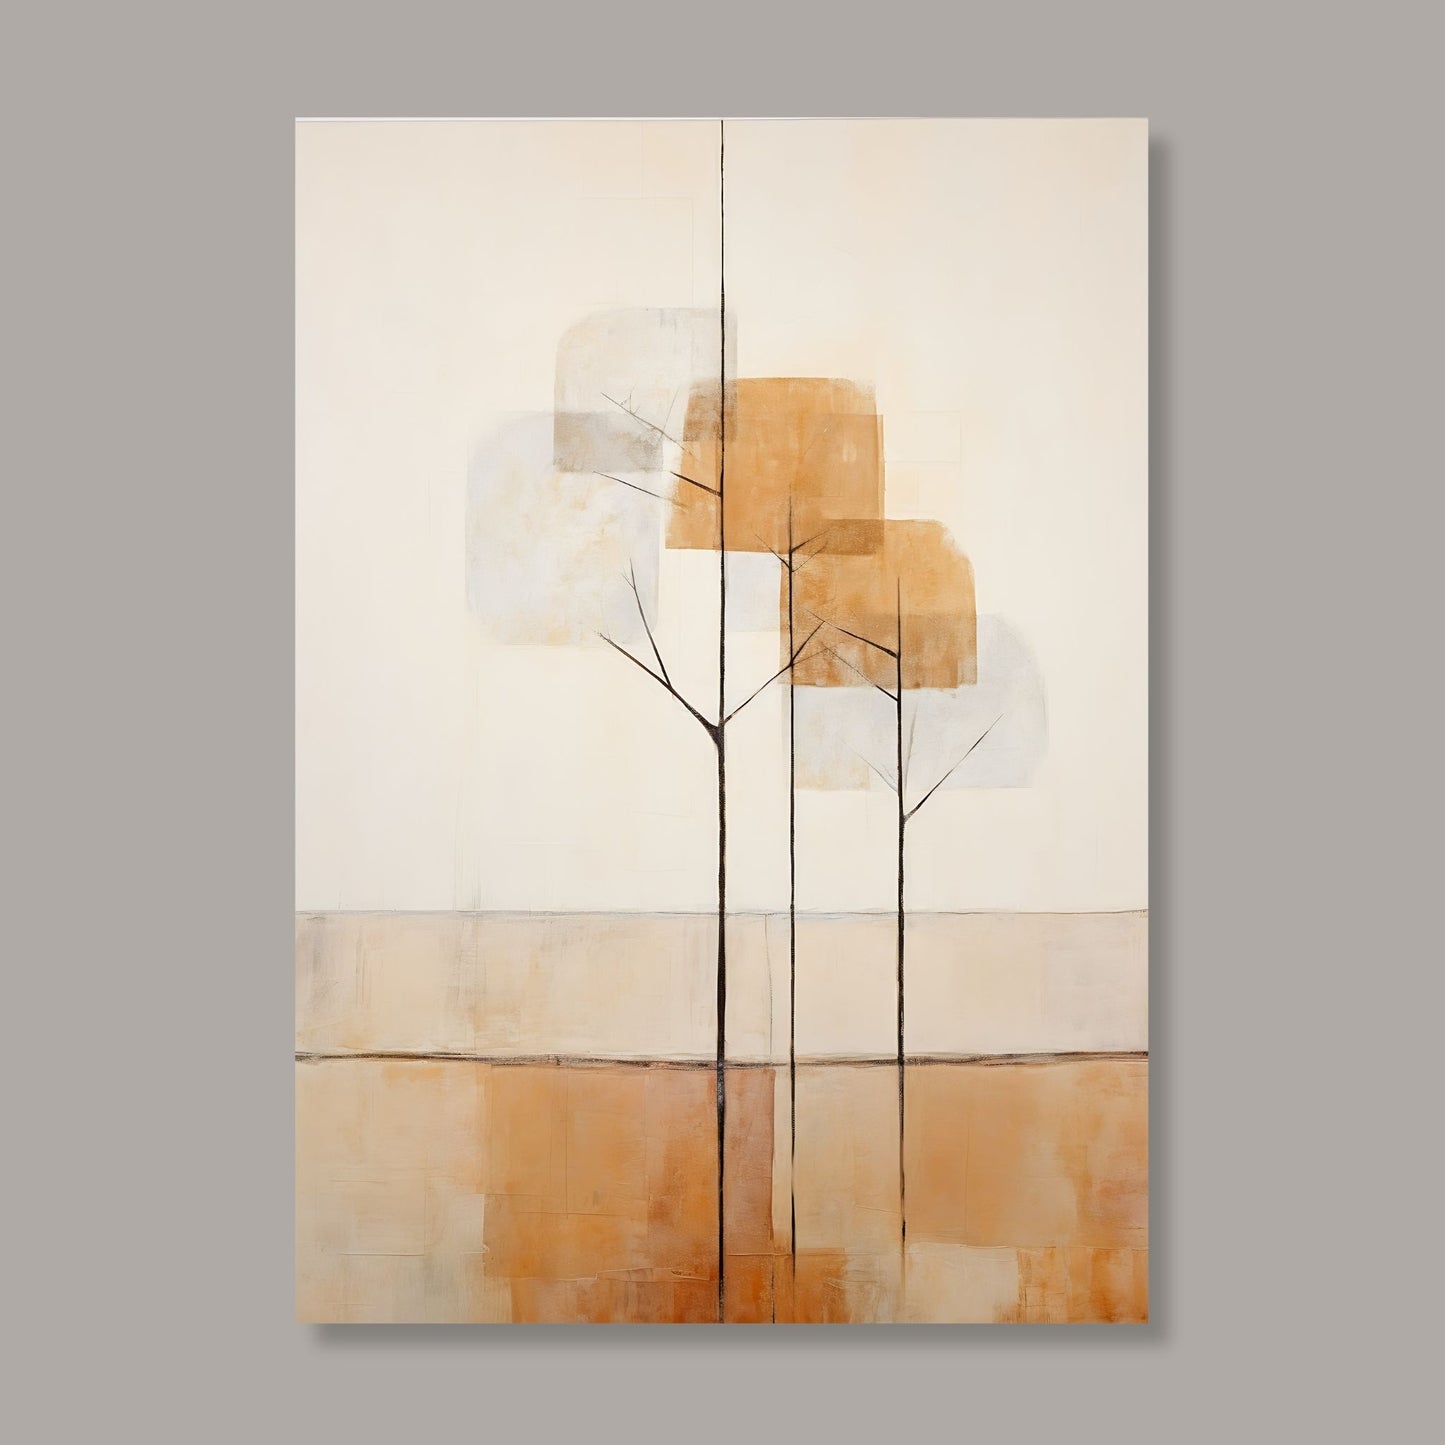 Abstract Forest - grafisk og abstrakt motiv av høye, slanke trær og skog i rust- og beige fargetoner. Illustrasjon av motiv på lerret.